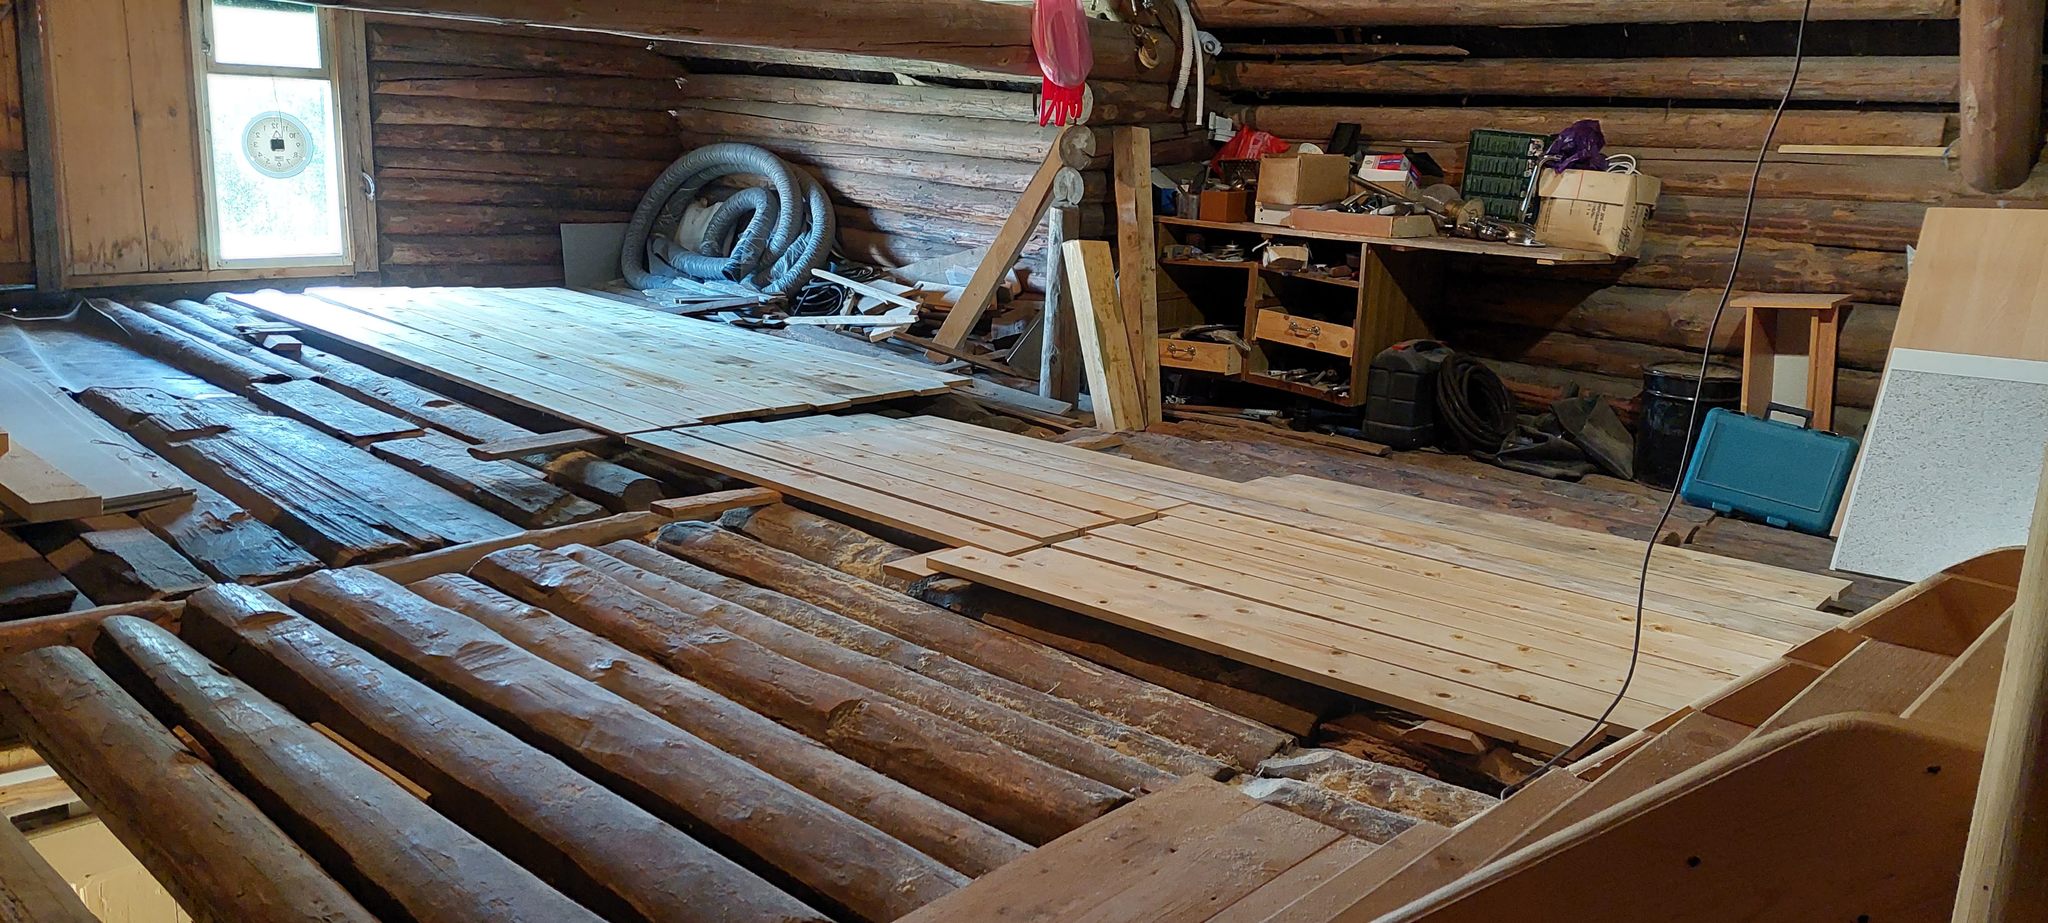 Building a woodshed - My, Woodshed, Construction, Longpost, Rukozhop